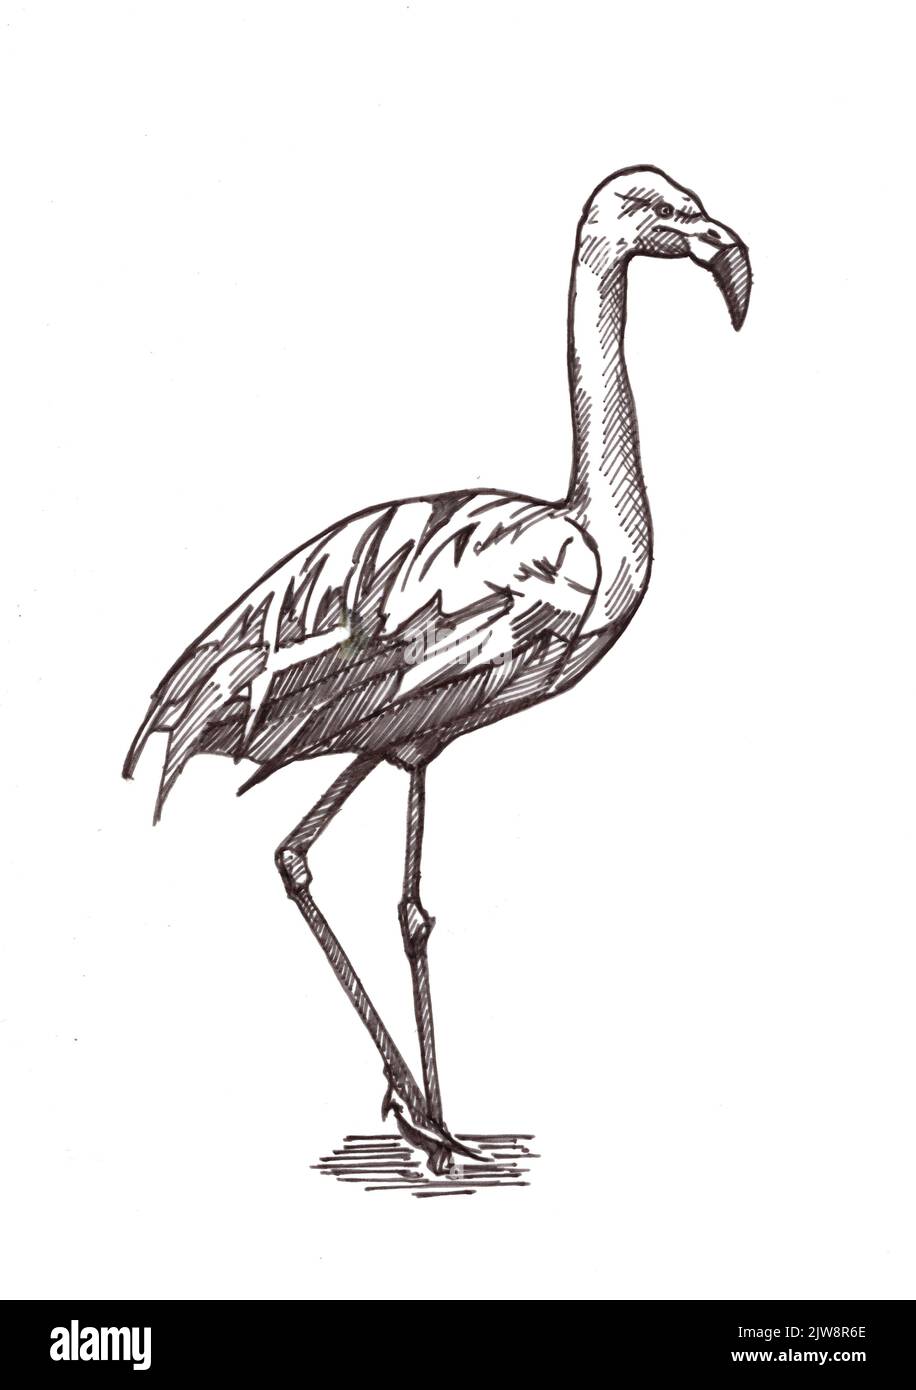 Schwarz-weiße Darstellung eines Flamingos auf weißem Hintergrund. Stockfoto